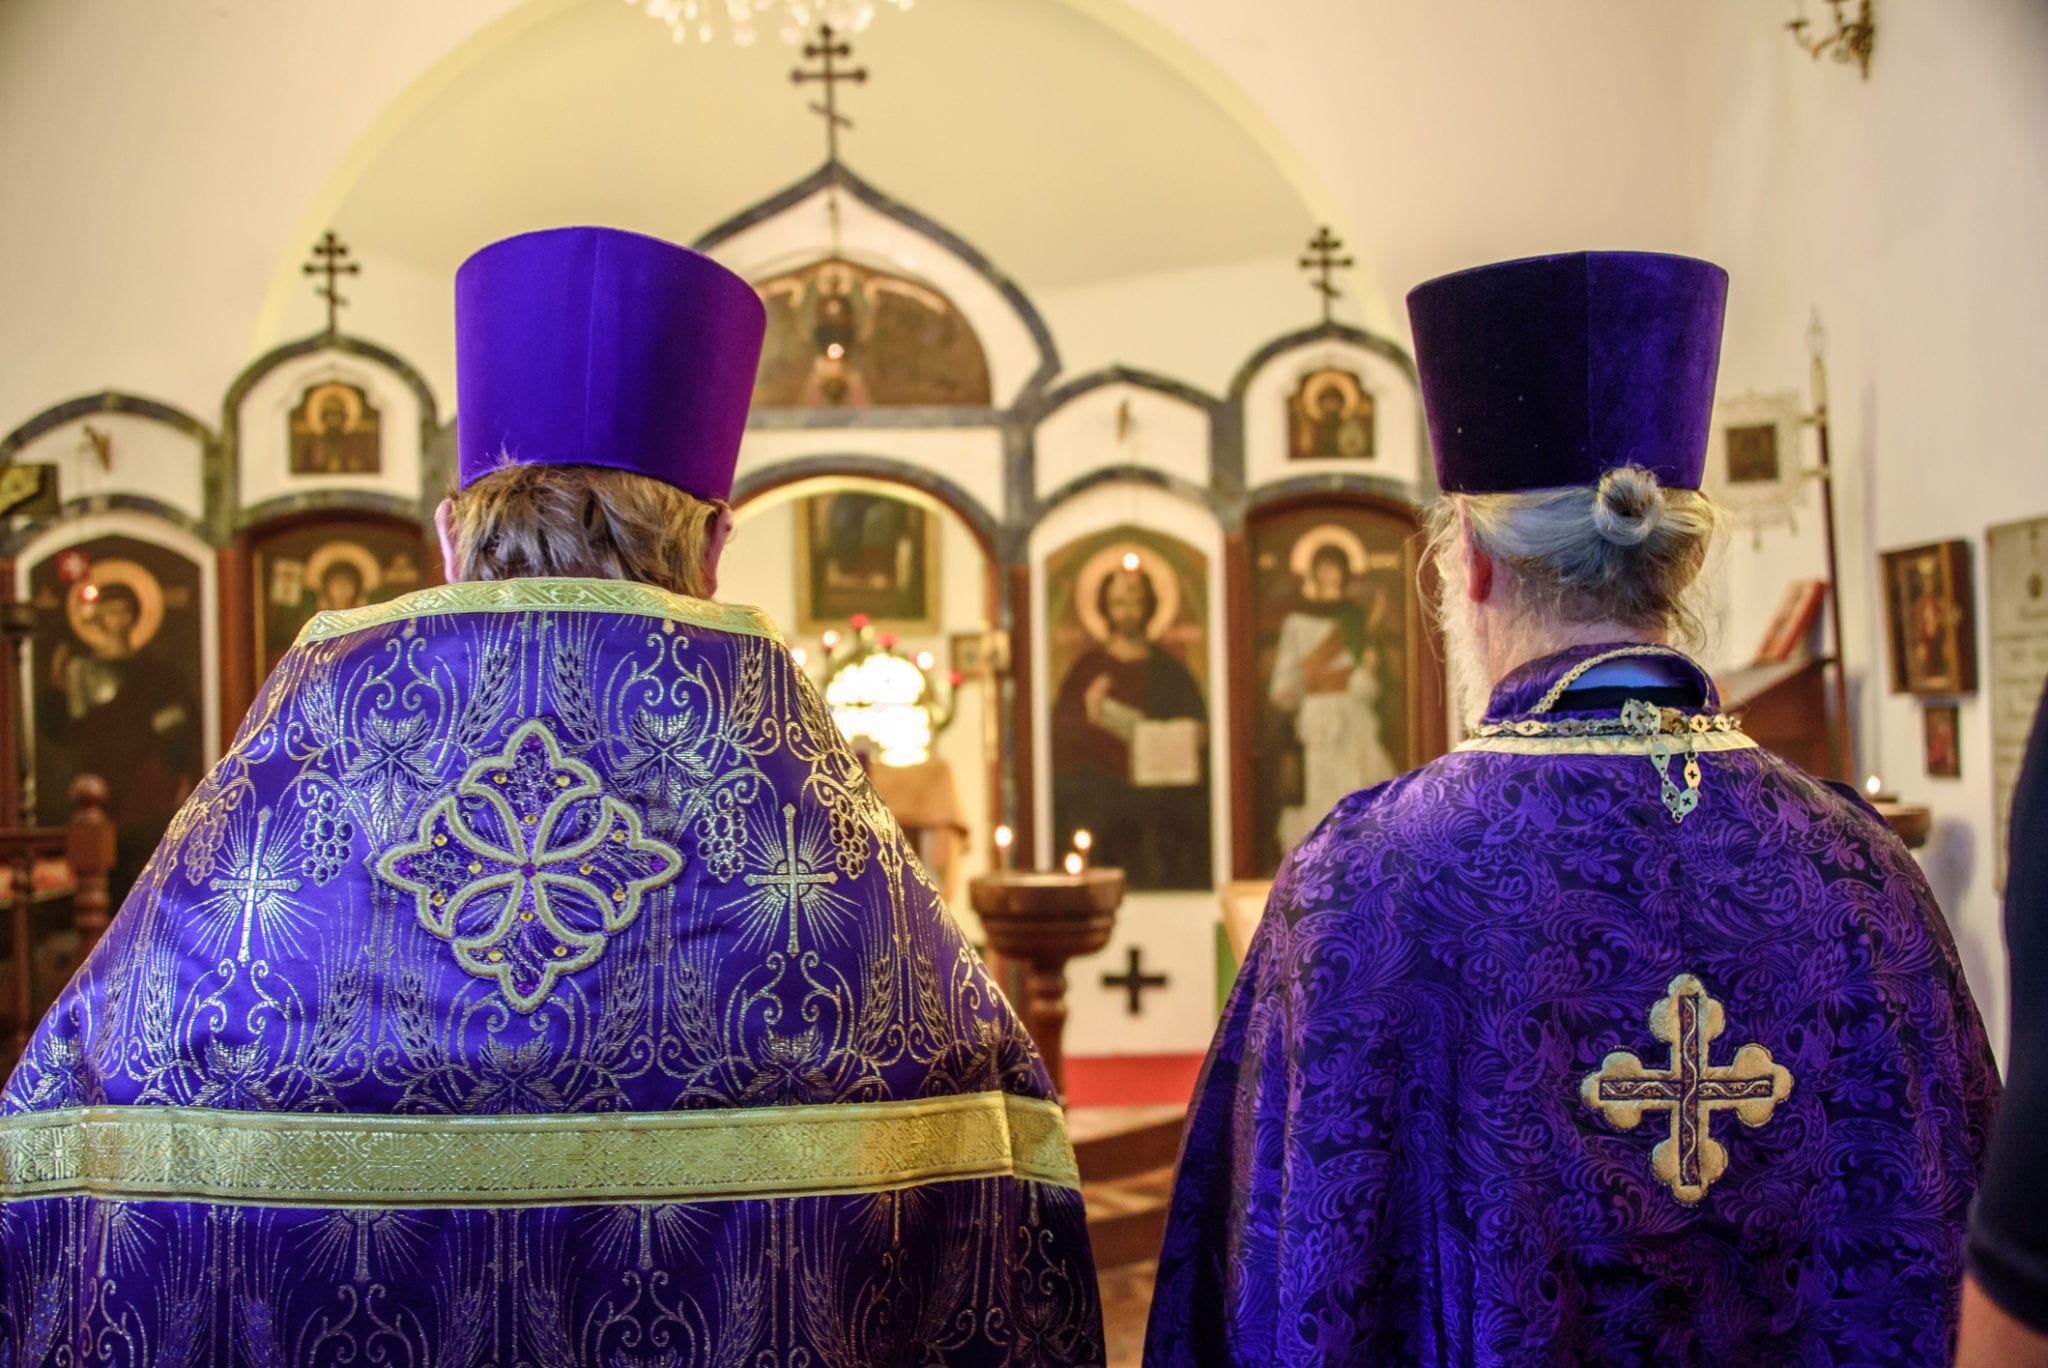 Priests in purple robes-purple